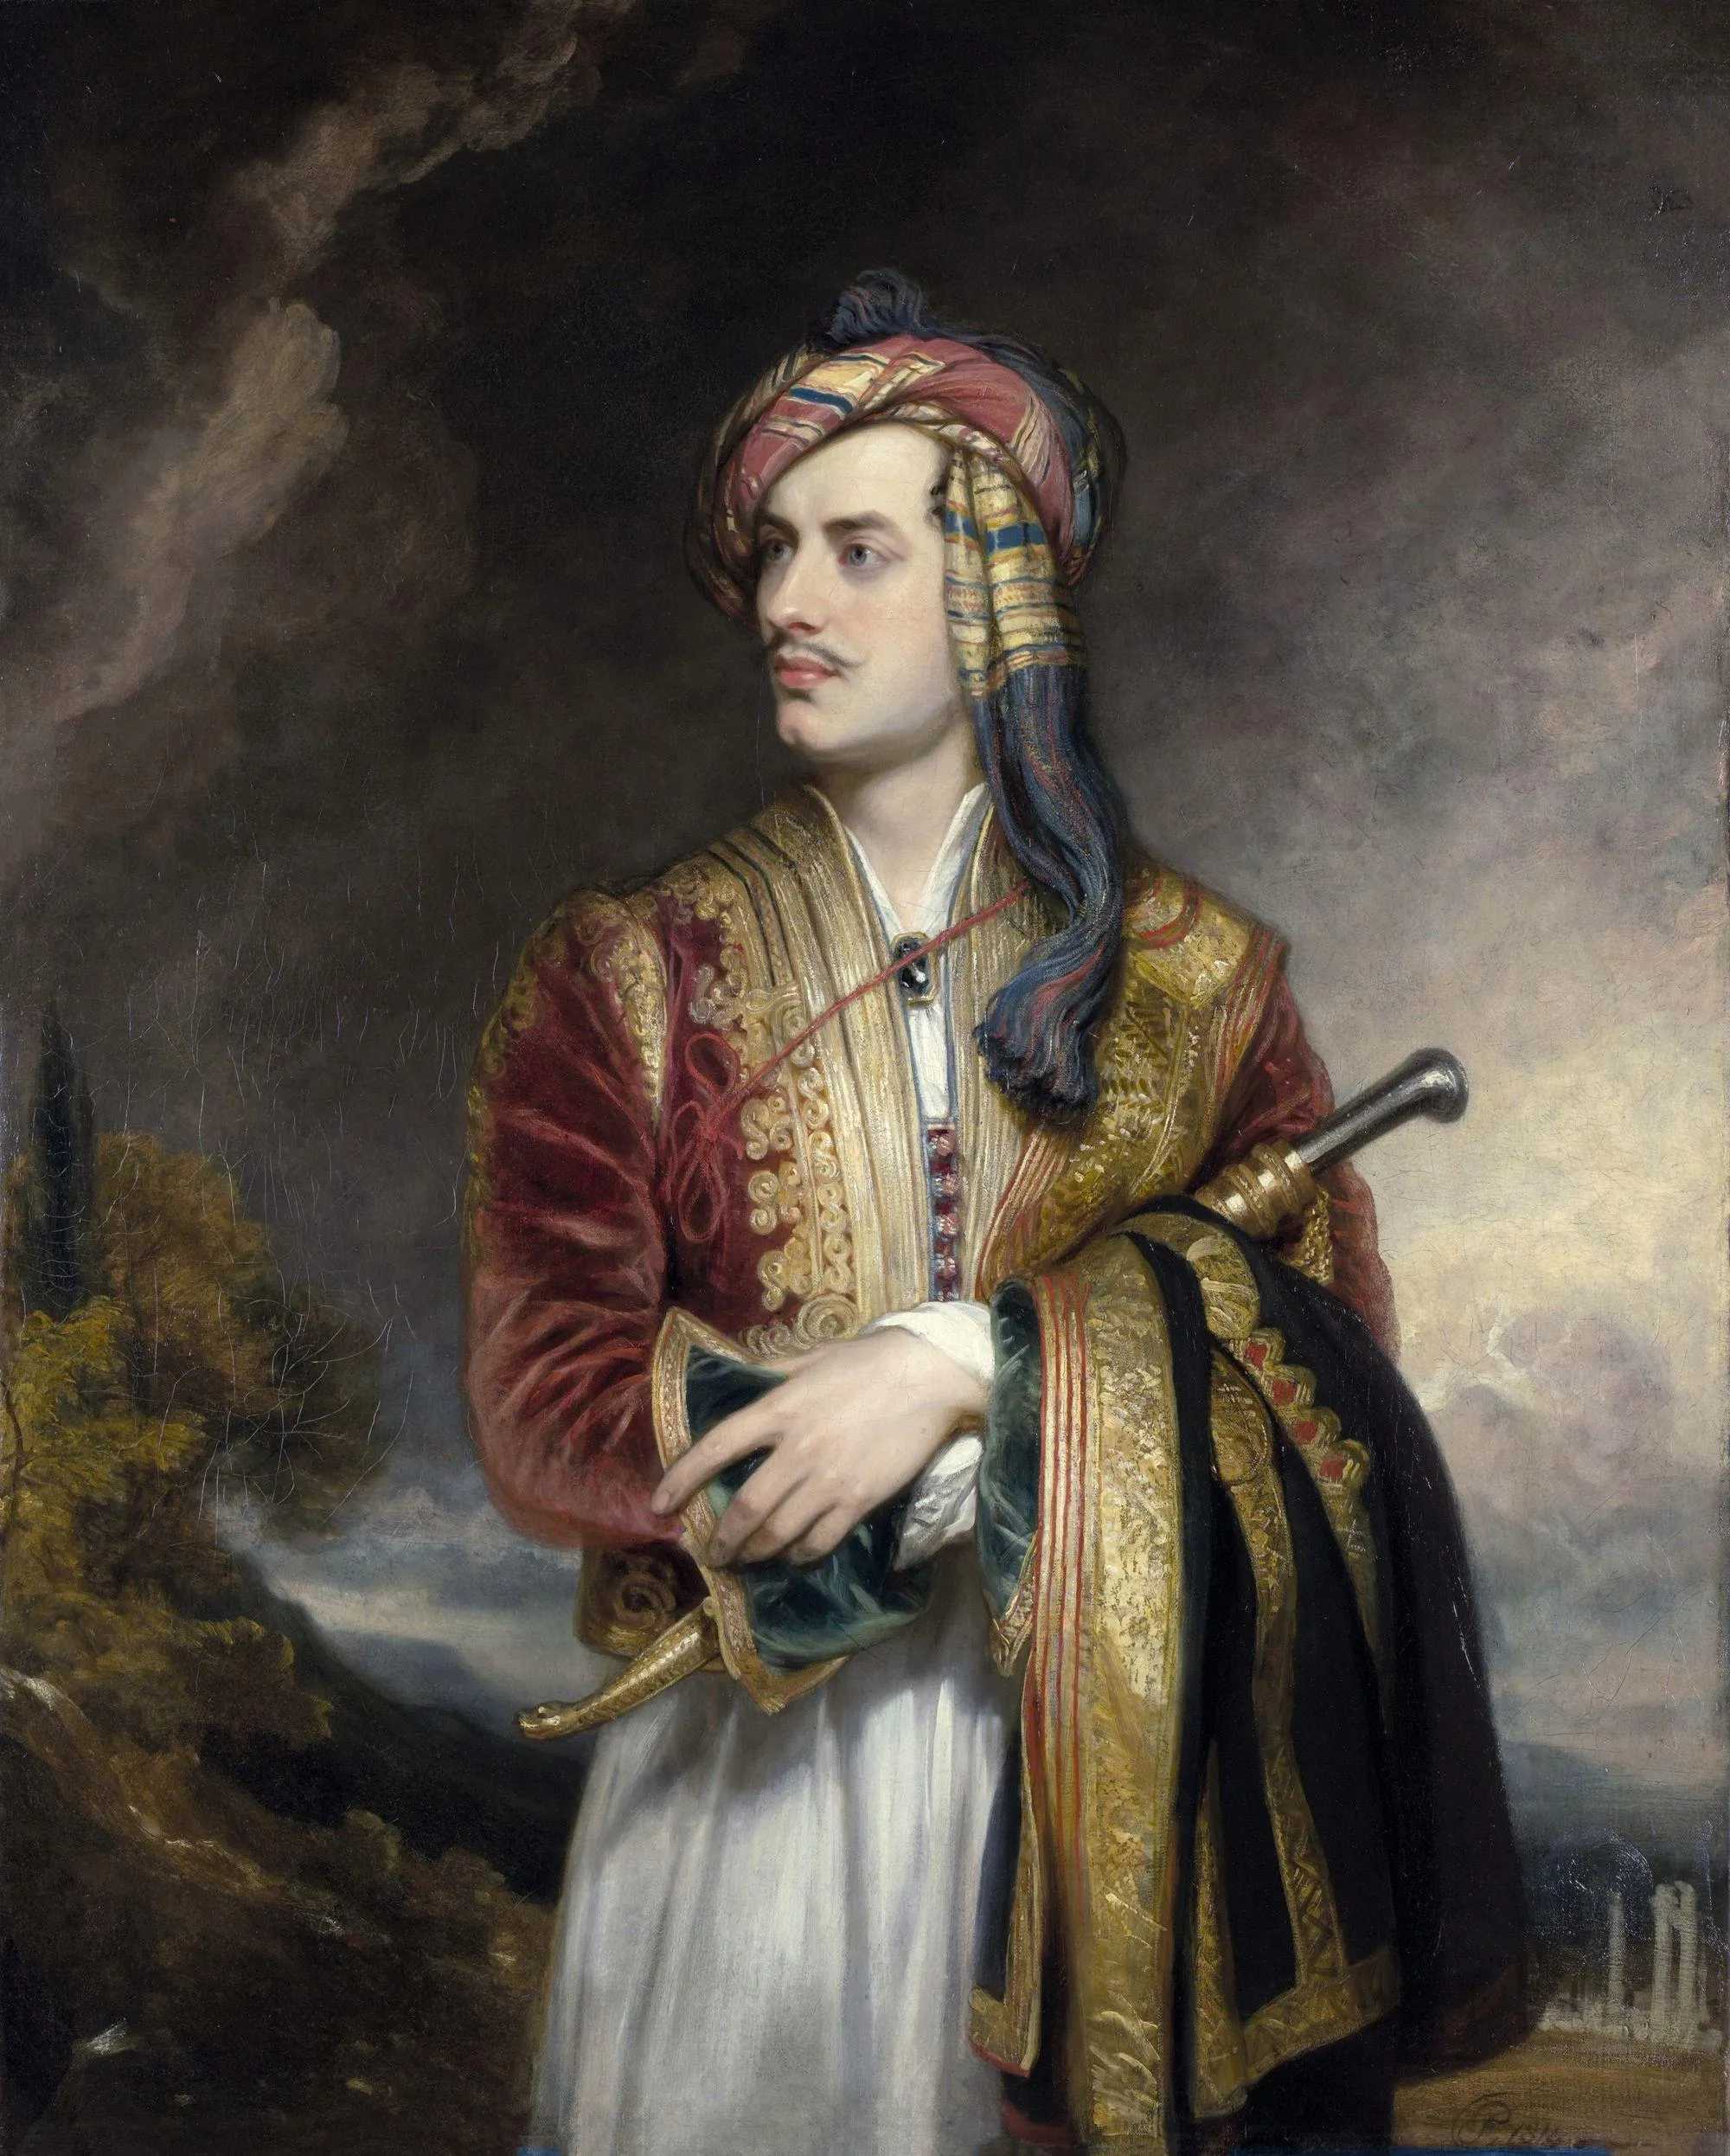 Thomas Phillips, Lord Byron en costume albanais, 1813, huile sur toile,
76,5 x 63,9 cm, National Portrait Gallery, Londres.